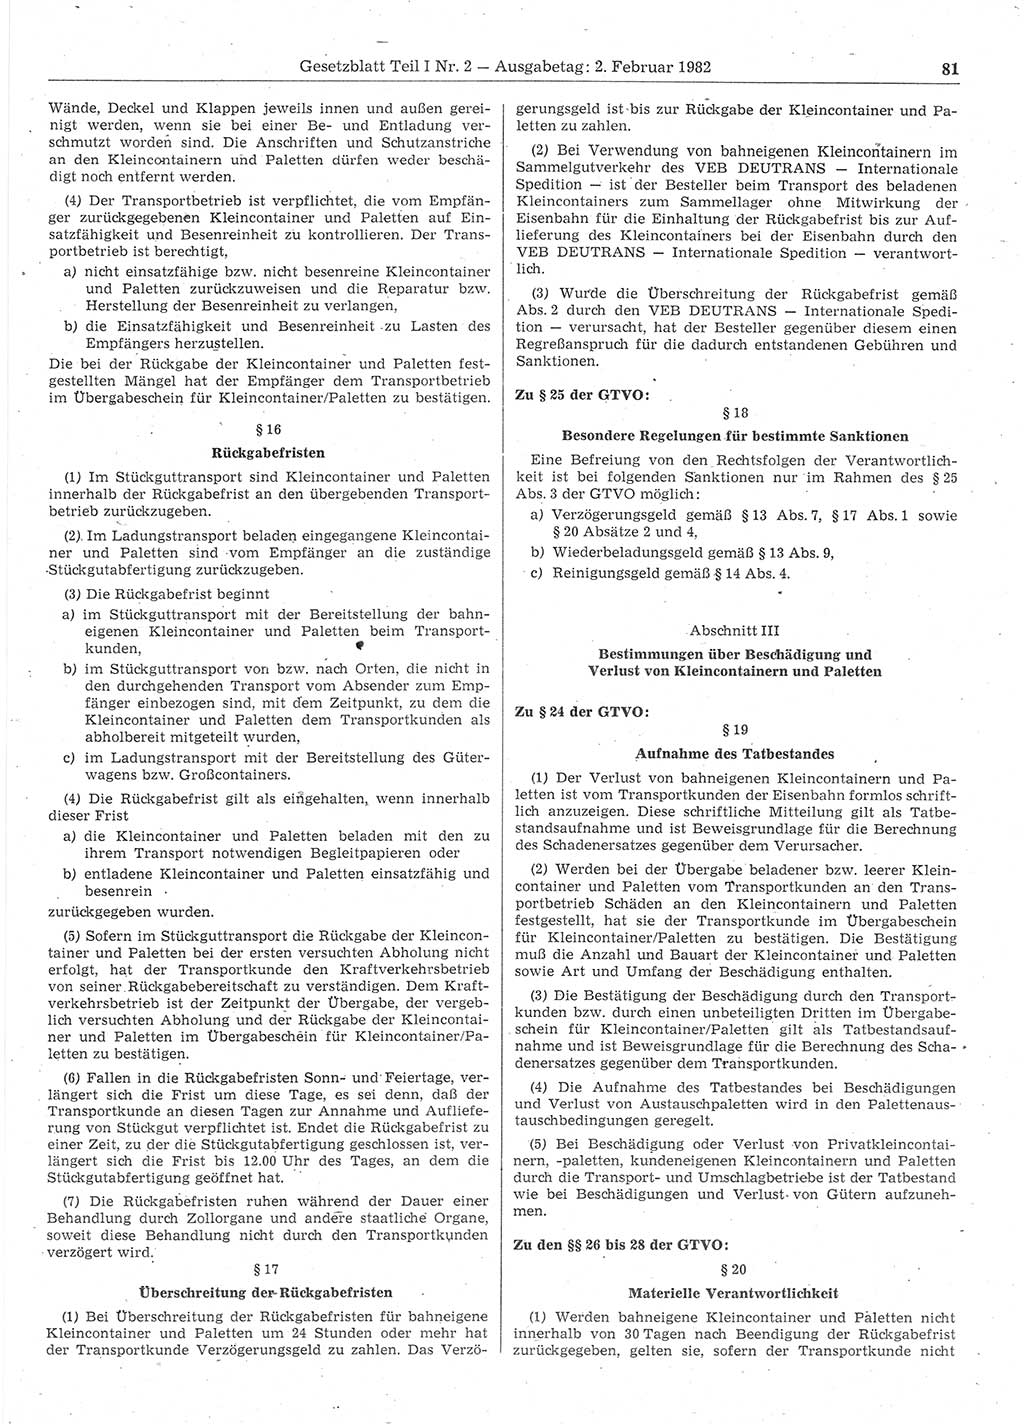 Gesetzblatt (GBl.) der Deutschen Demokratischen Republik (DDR) Teil Ⅰ 1982, Seite 81 (GBl. DDR Ⅰ 1982, S. 81)